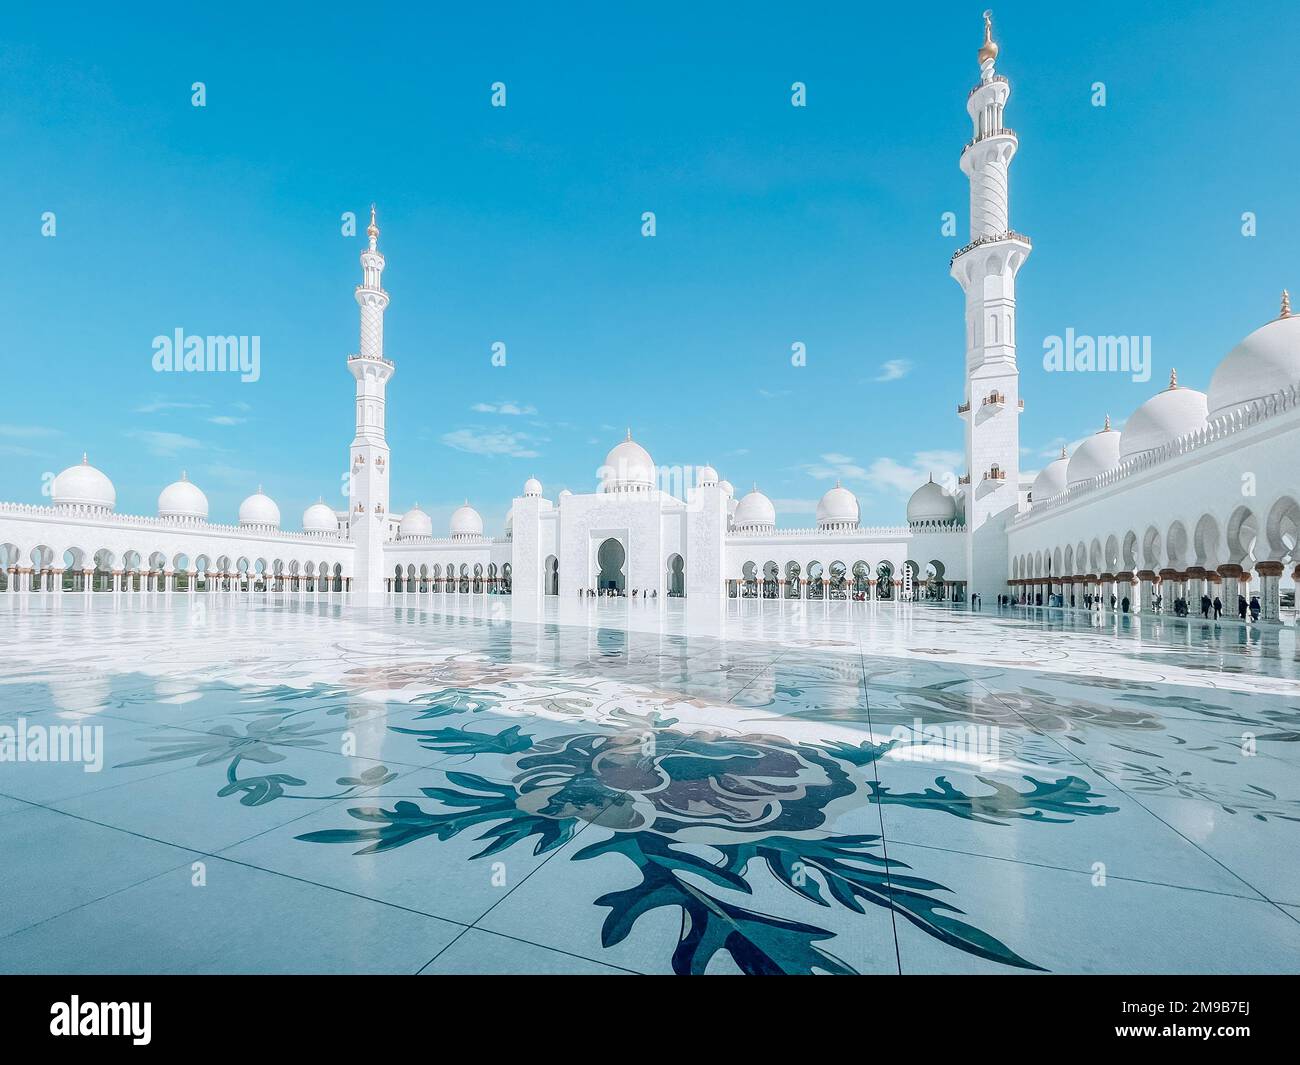 Gran mezquita de Abu Dhabi Sheik Zayed ubicada en la capital de los Emiratos Árabes Unidos | Hermosa arquitectura islámica | Atracción turística | Rama Foto de stock